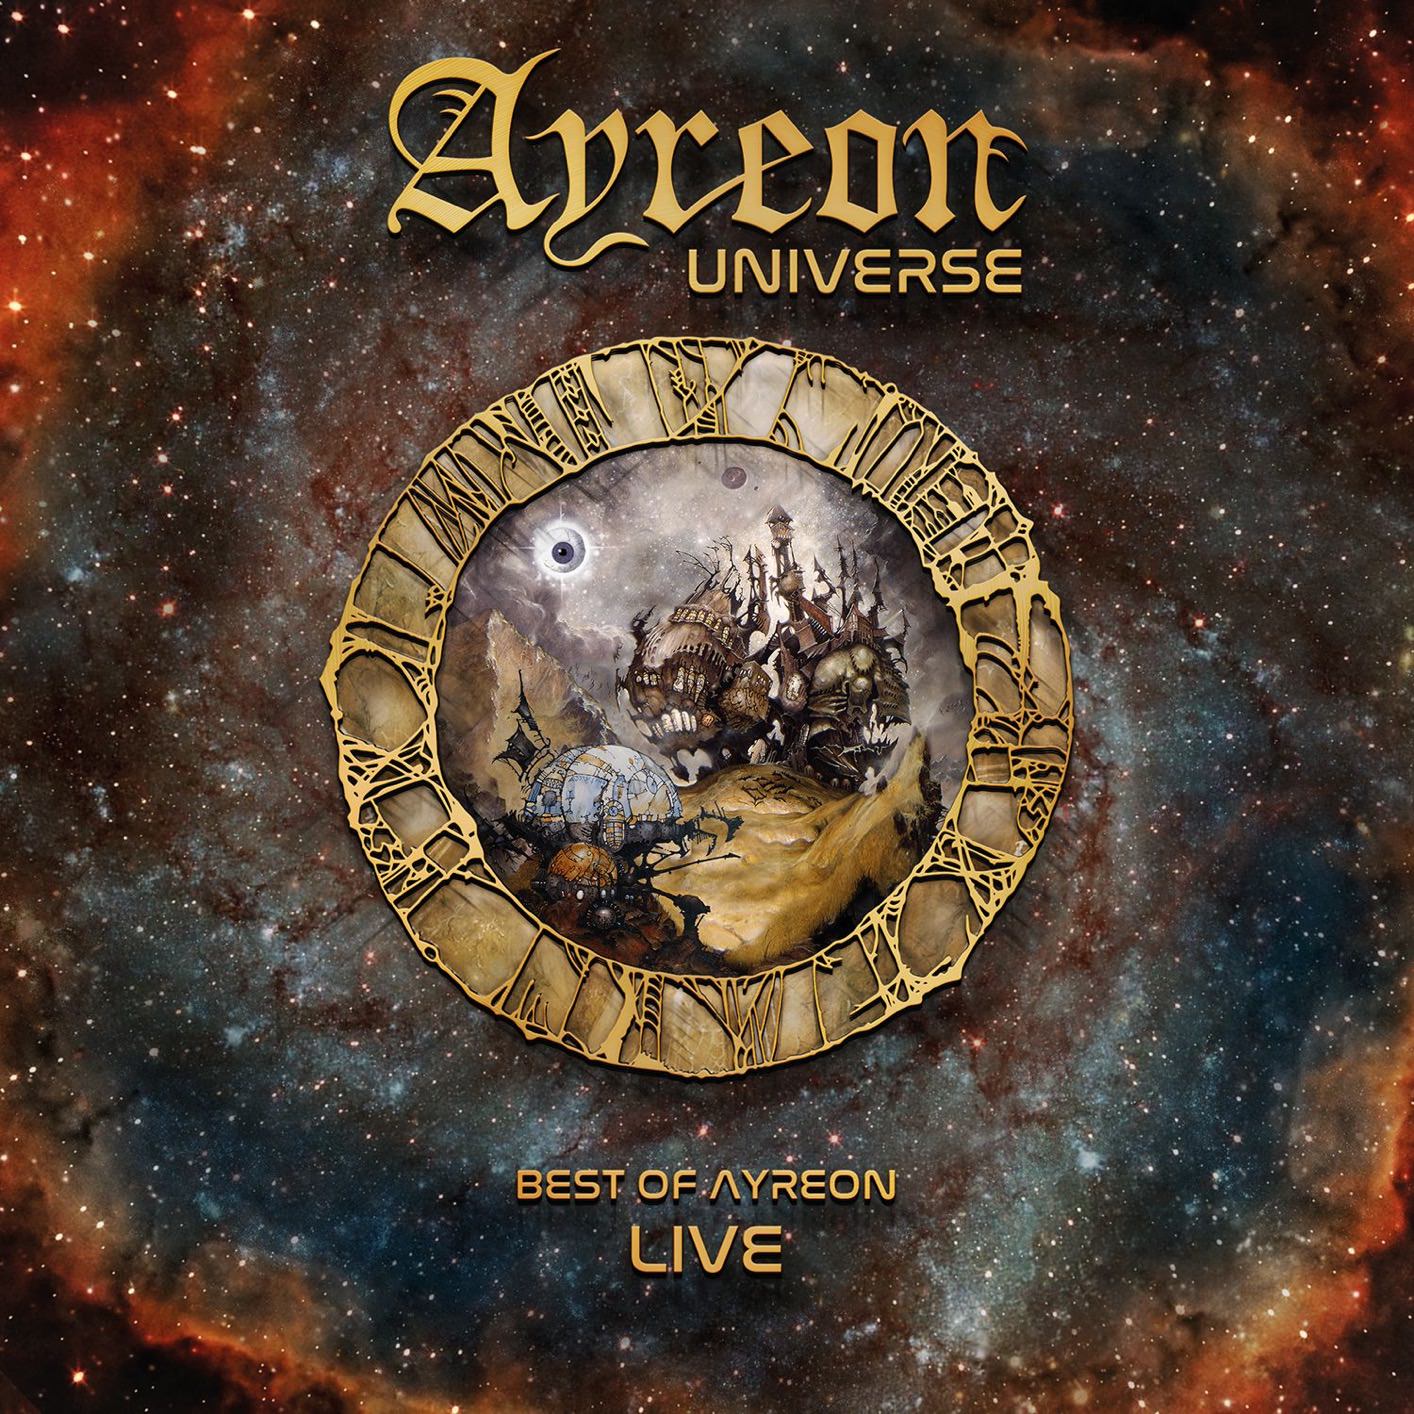 Ayreon - Ayreon Universe (2018) [Qobuz FLAC 24bit/48kHz]